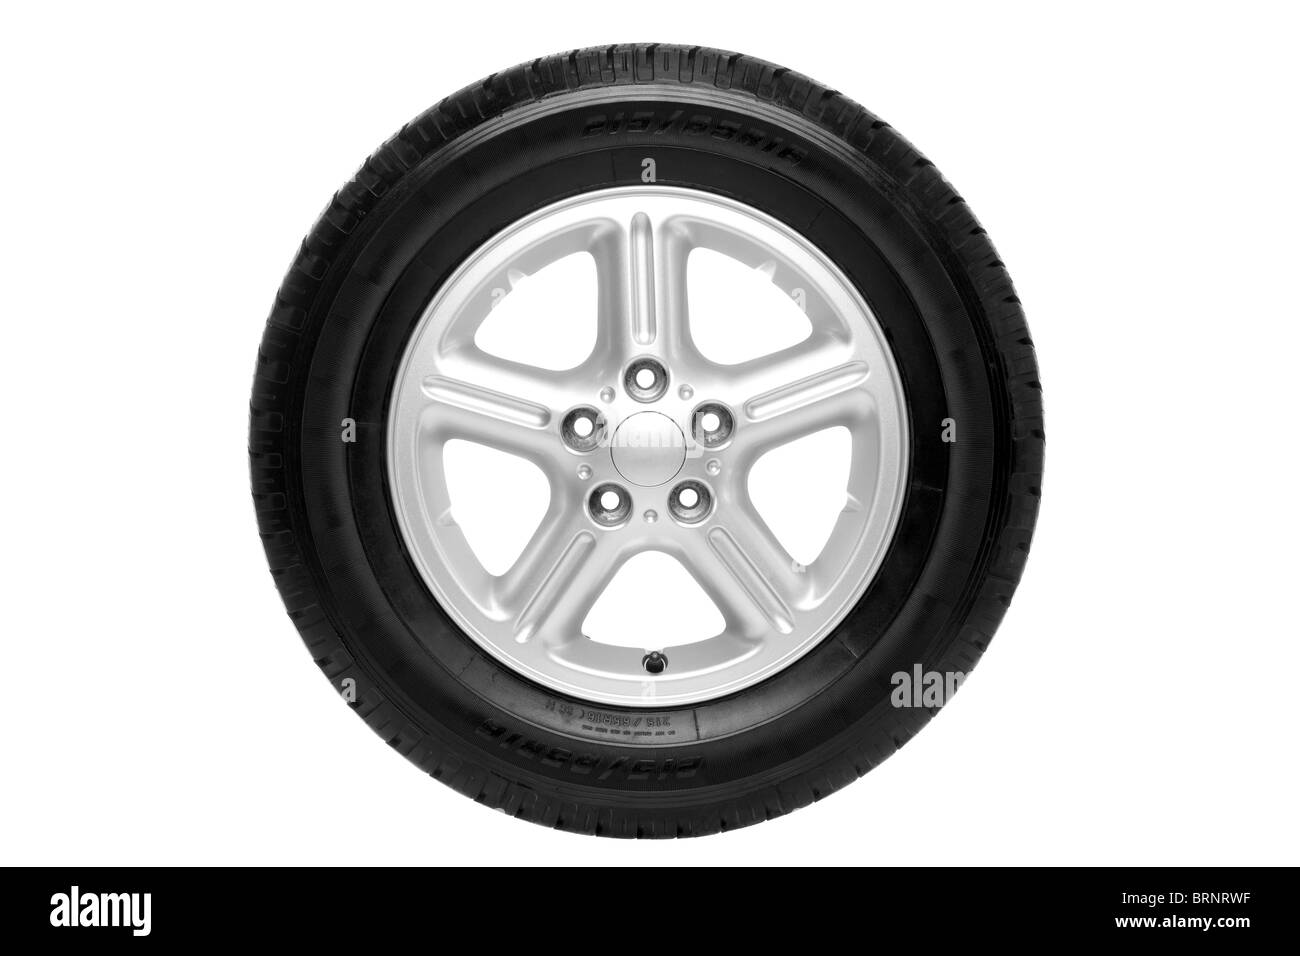 Foto de un neumático de automóvil (neumático) en cinco habló llanta de aluminio aislado en un fondo blanco con trazado de recorte. Foto de stock